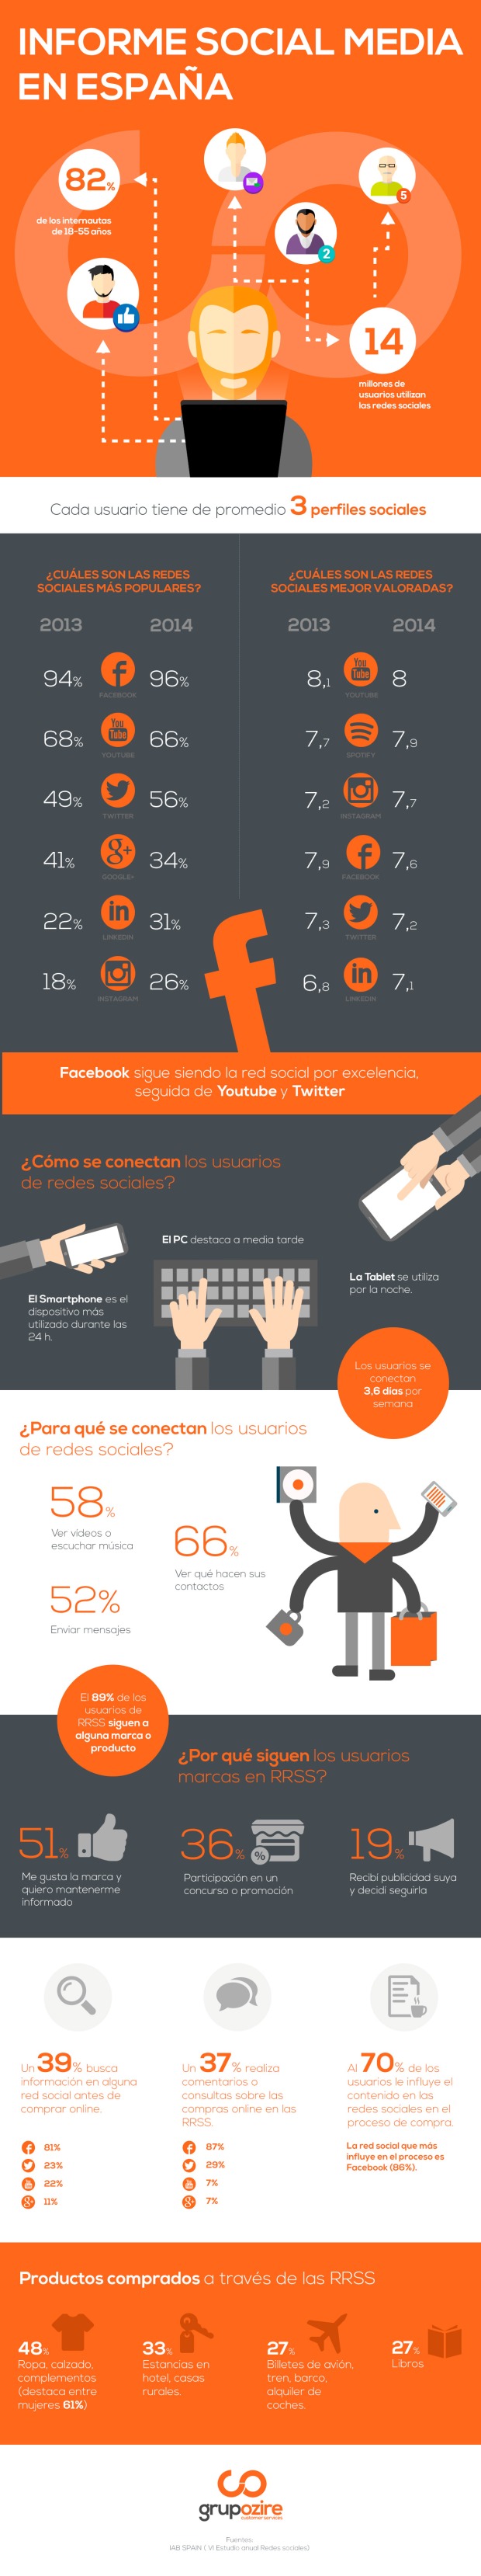 Panorama de las Redes Sociales en España (2015)